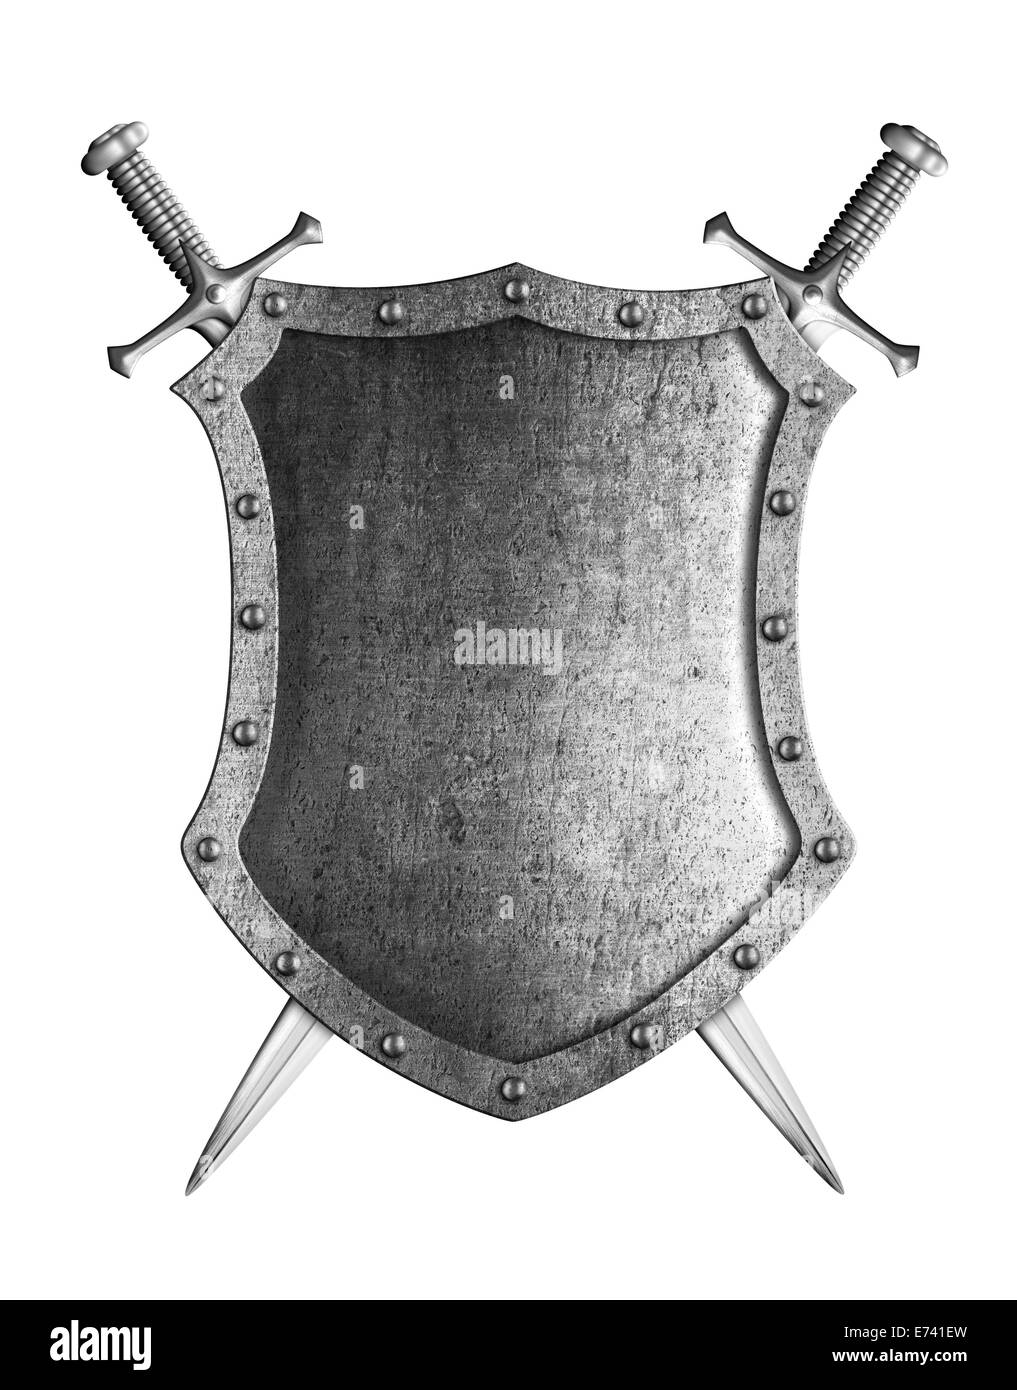 Grand bouclier médiéval avec deux épées croisées isolated on white Banque D'Images